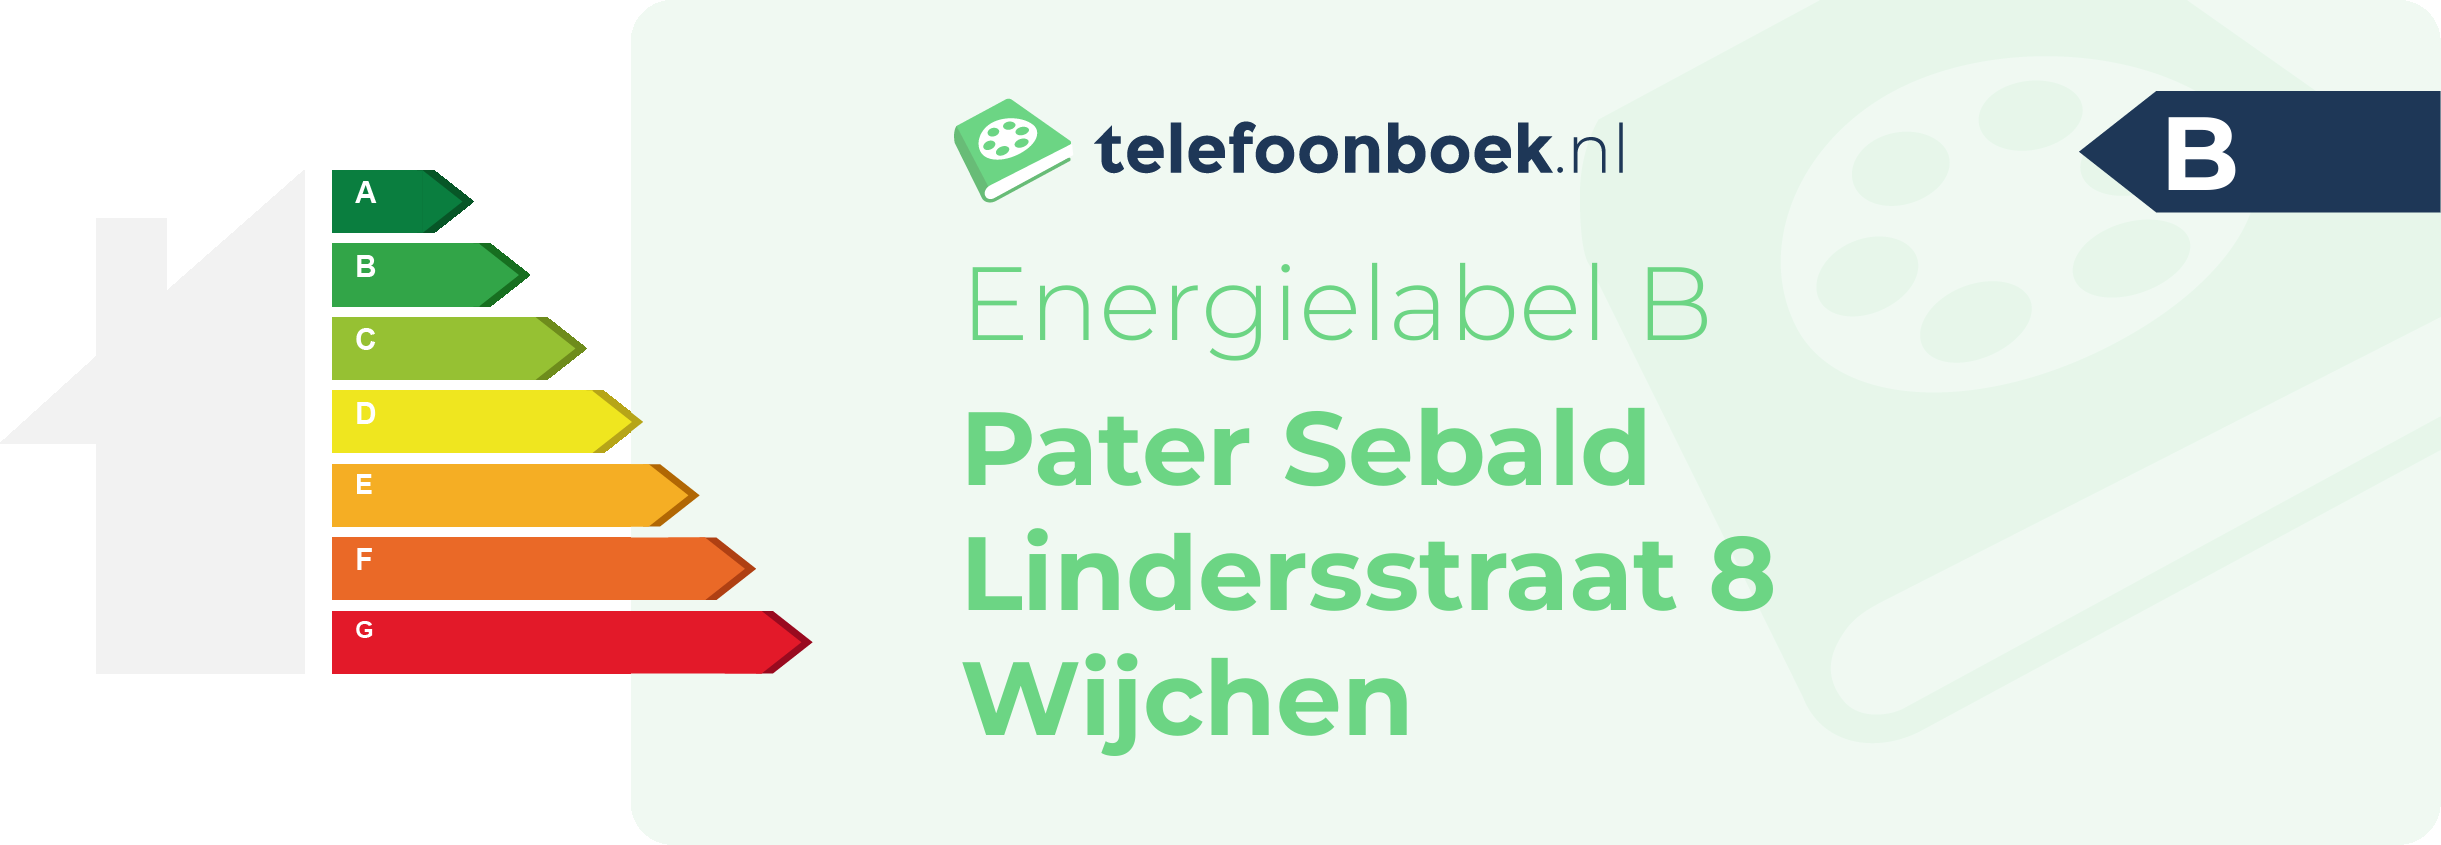 Energielabel Pater Sebald Lindersstraat 8 Wijchen